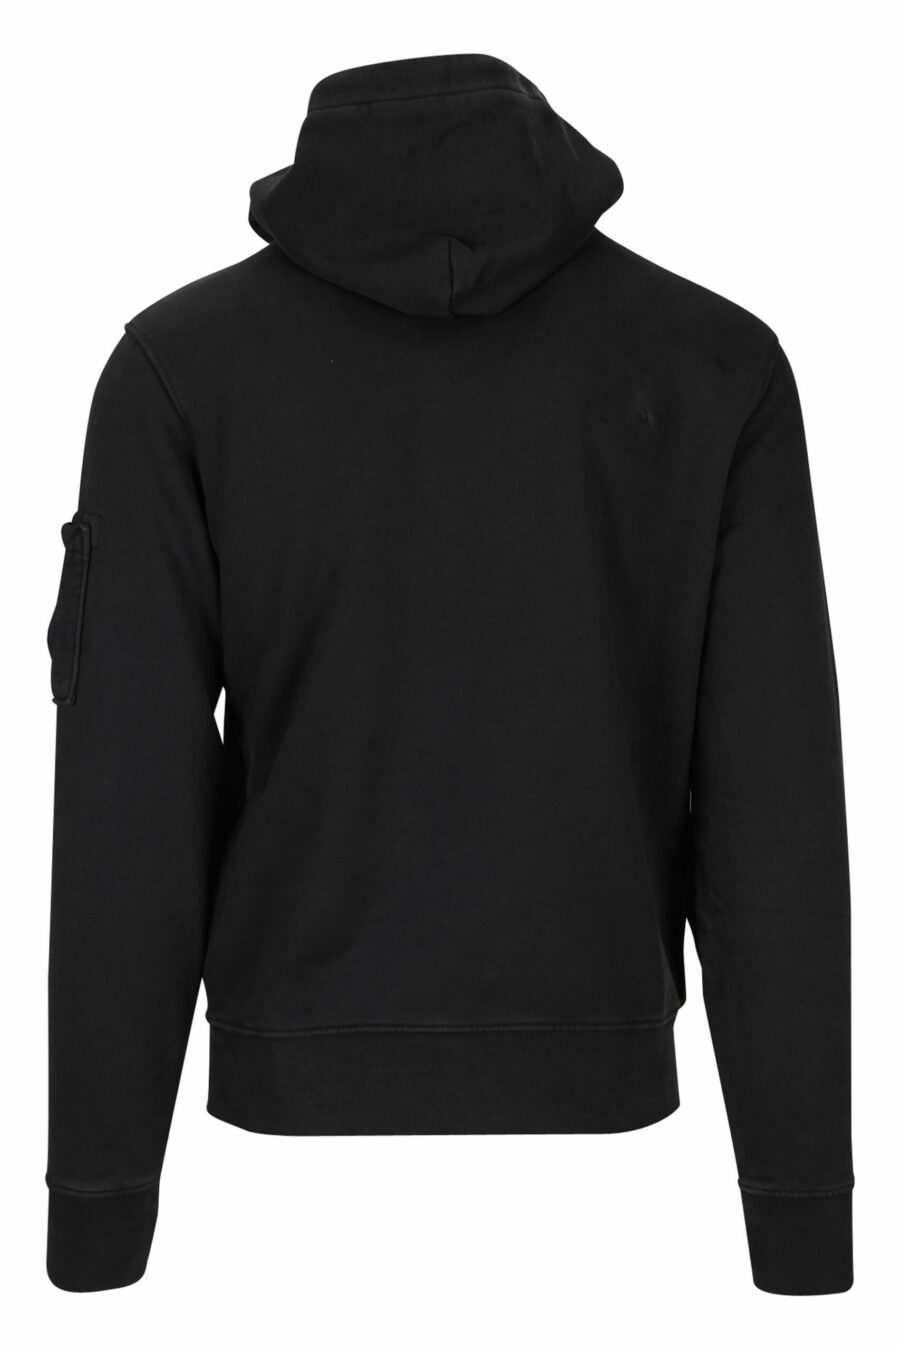 Schwarzes Kapuzensweatshirt mit seitlicher Logolinse - 7620943599336 2 skaliert